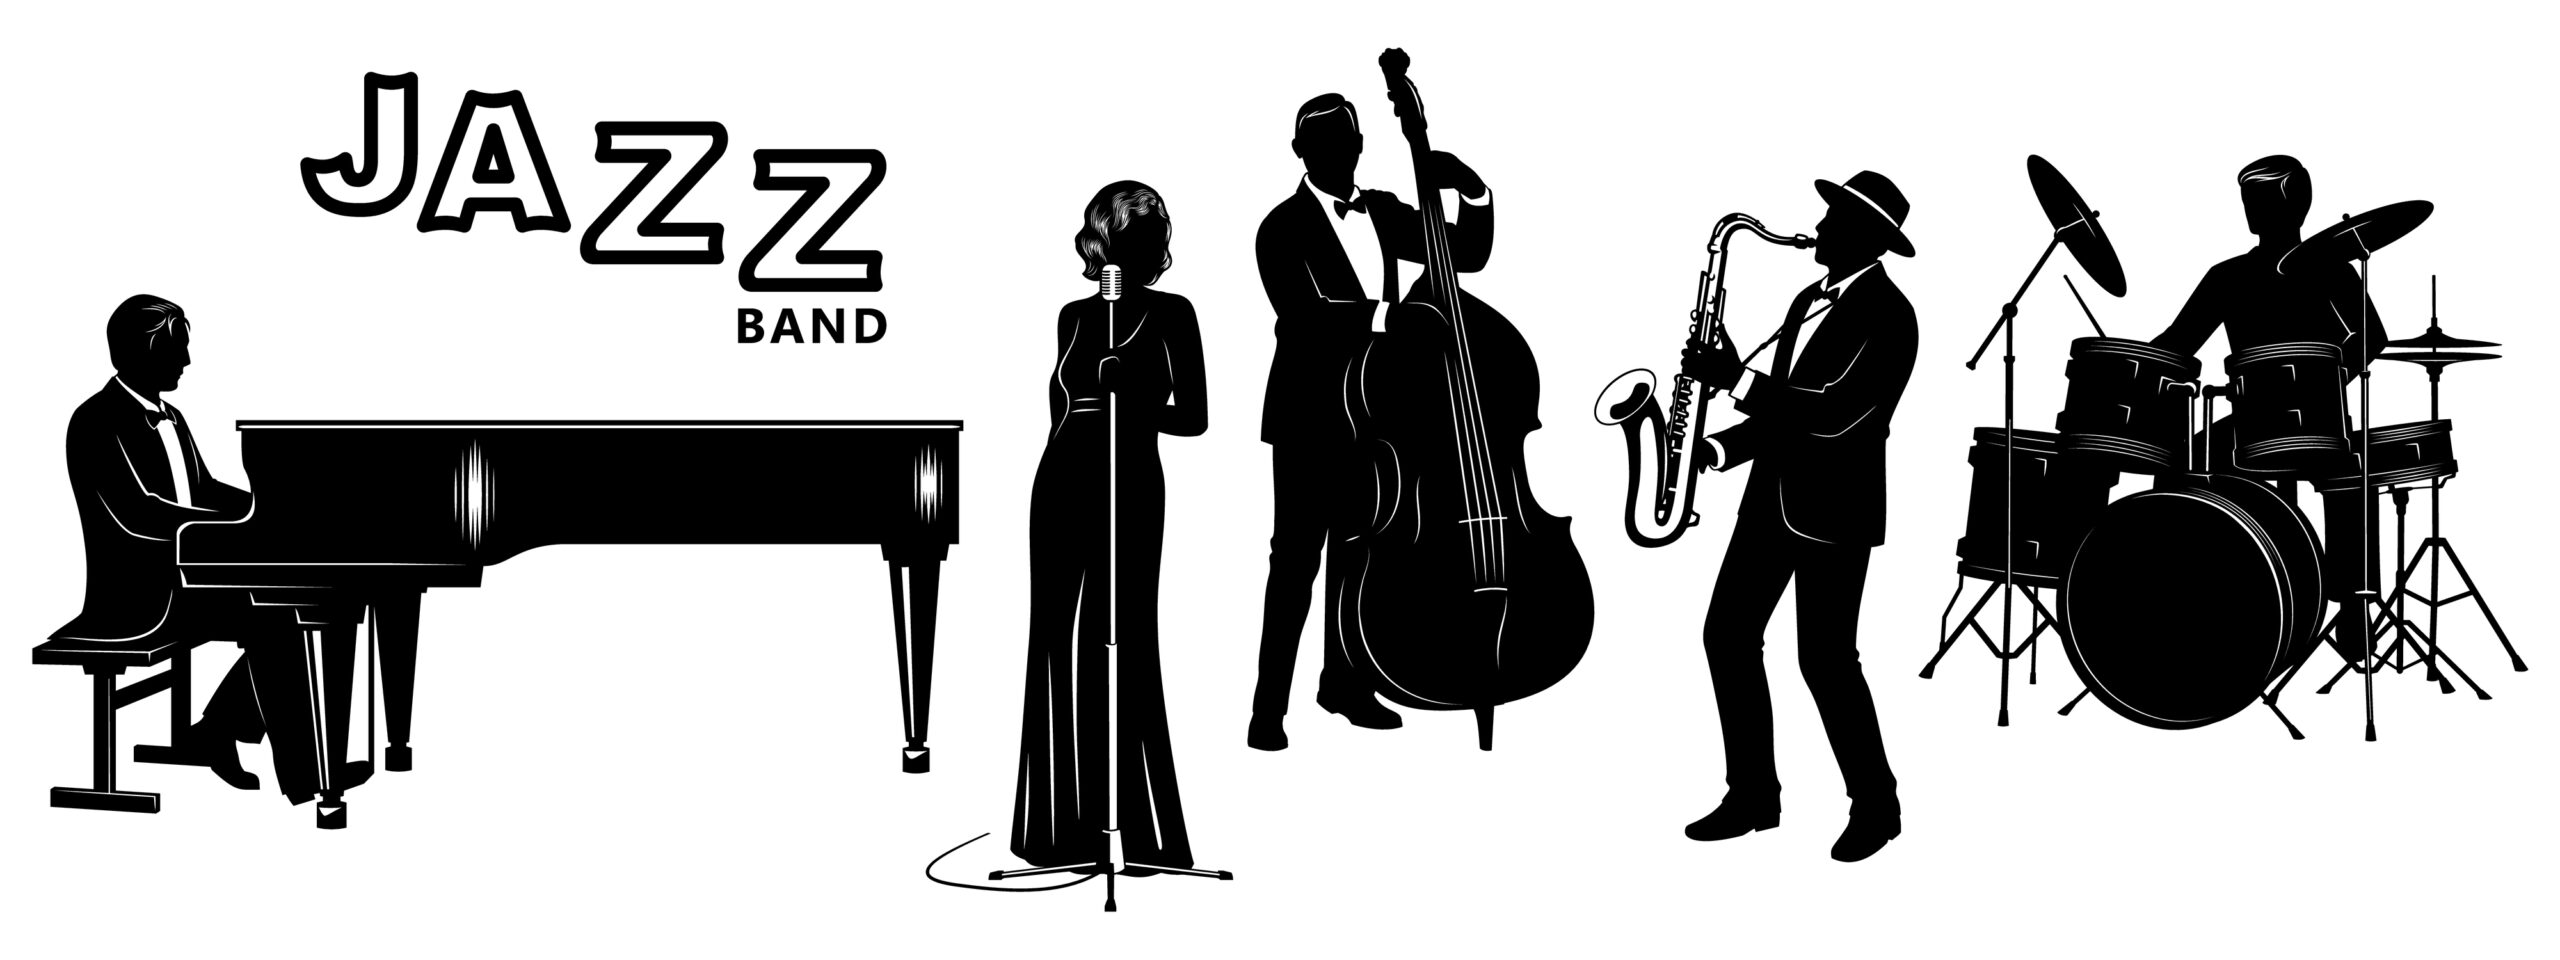 Jazz Band Bg Scaled